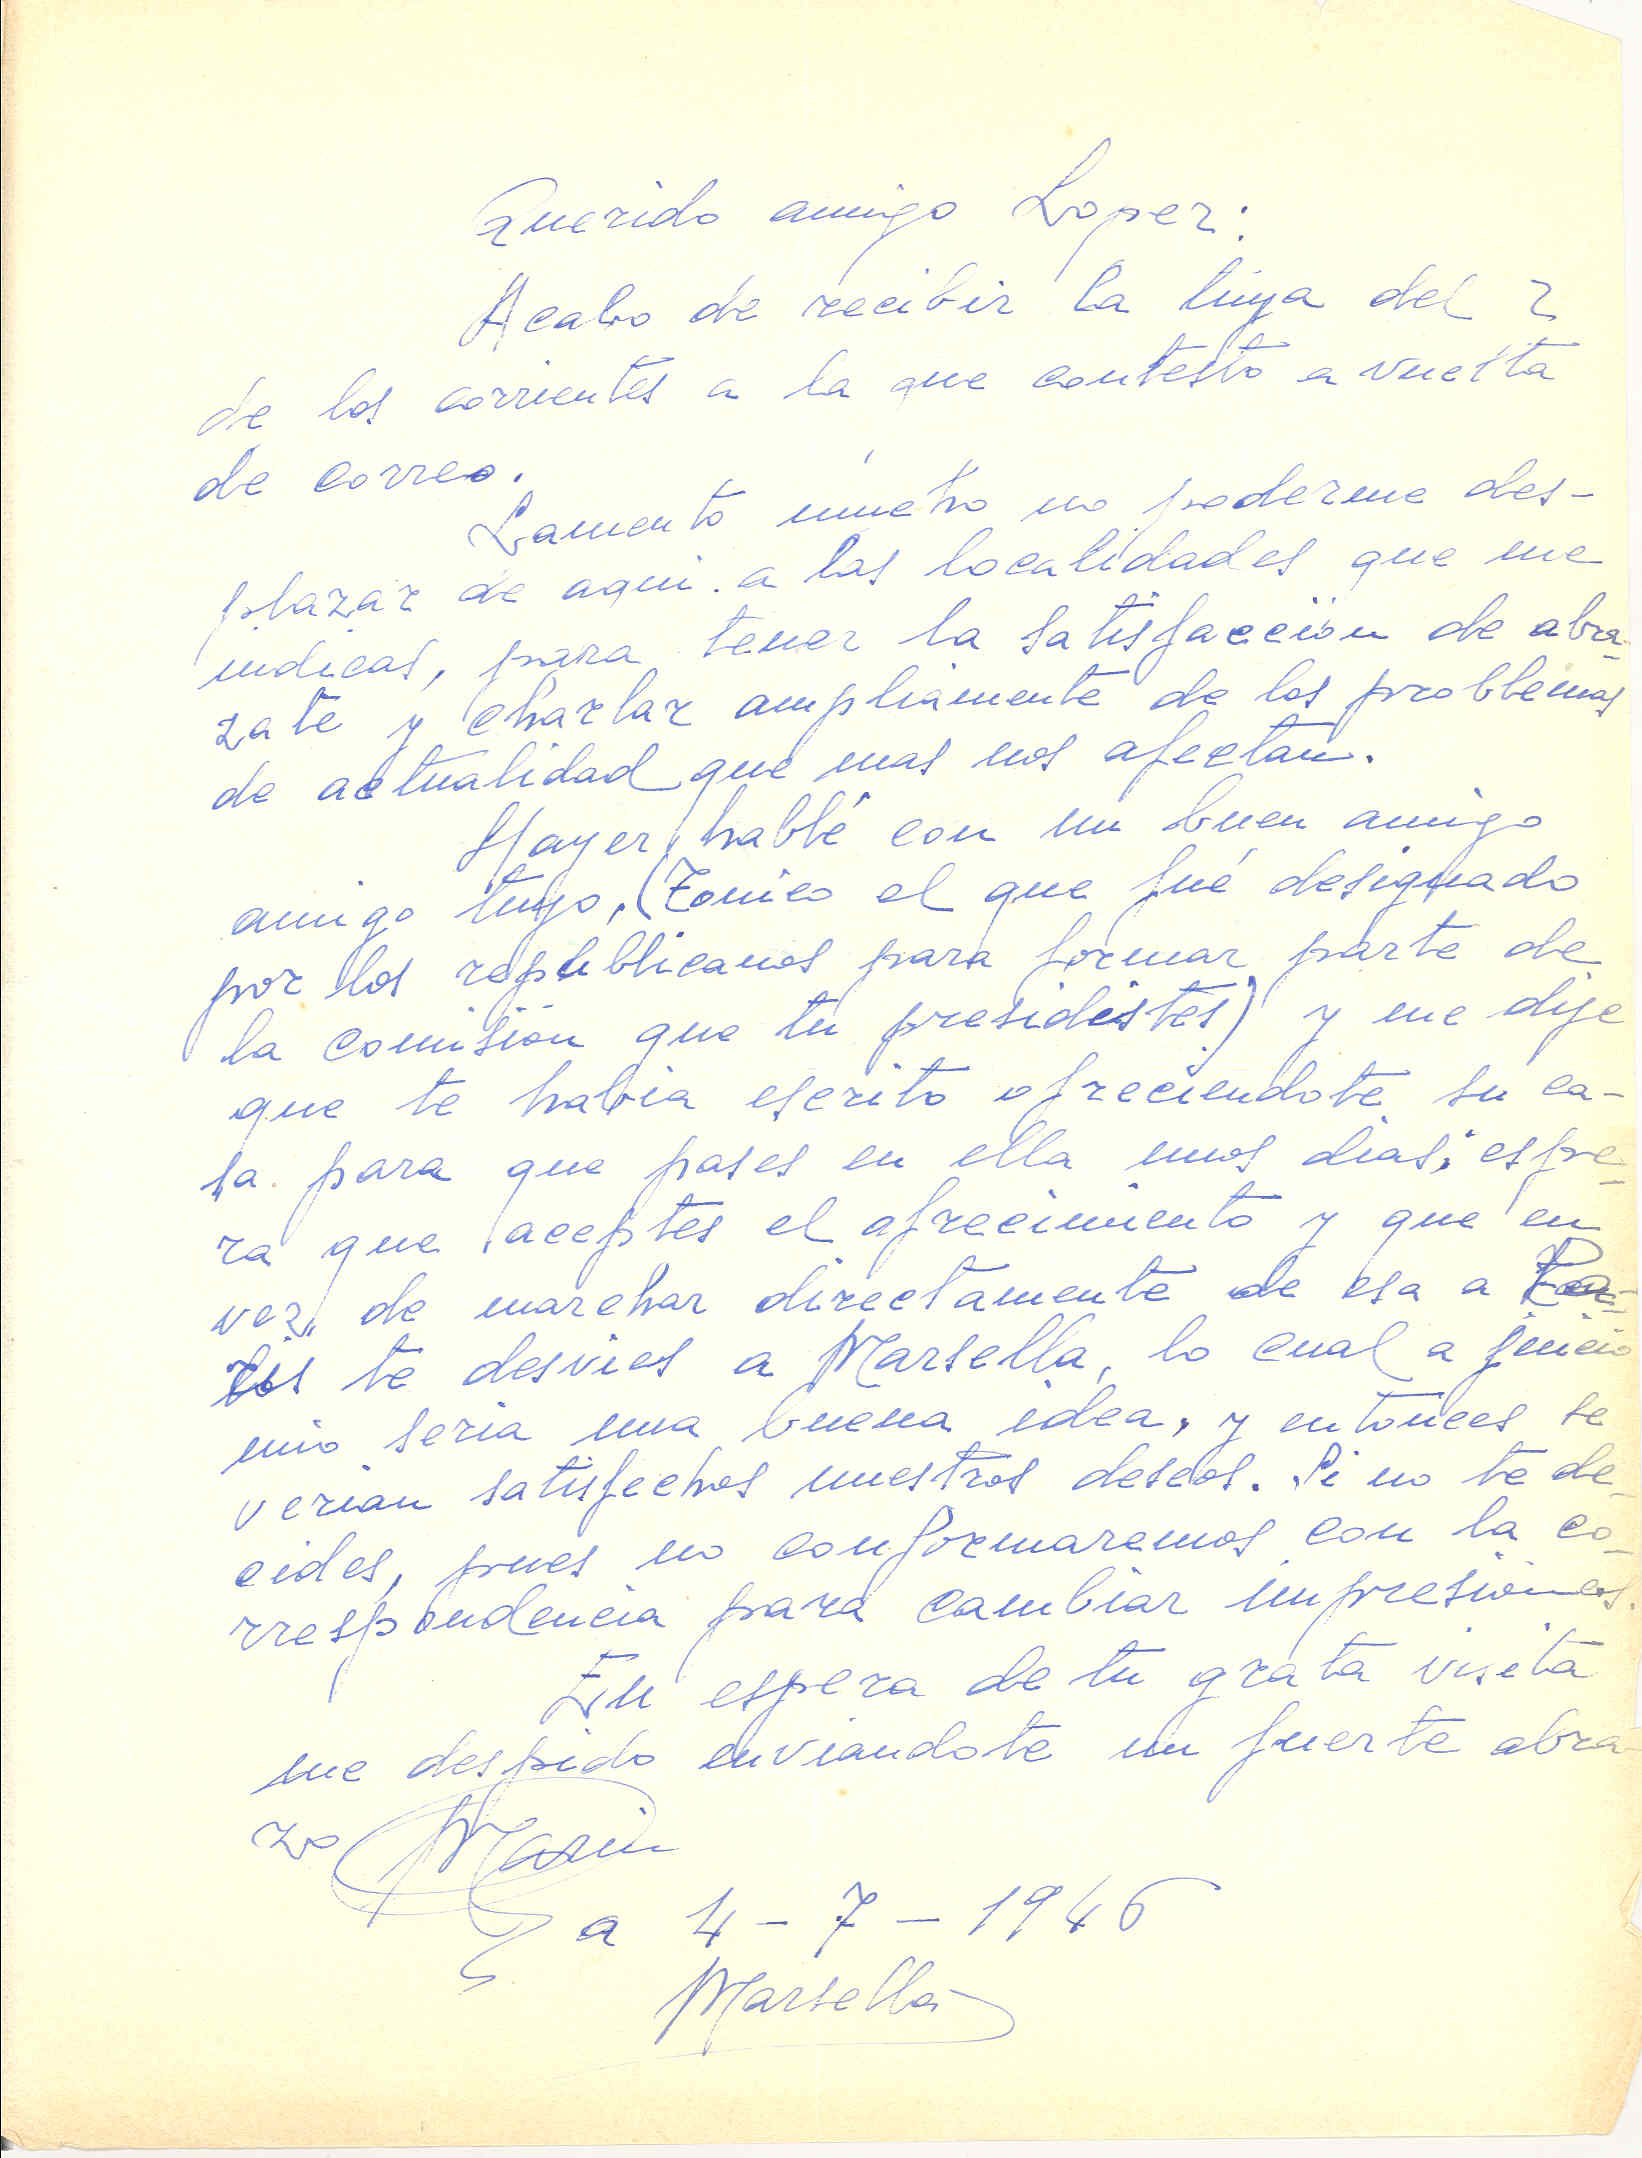 Carta de González Marín en la que invita a López, de viaje por Francia, a visitarle en Marsella para hablar de diversos asuntos.